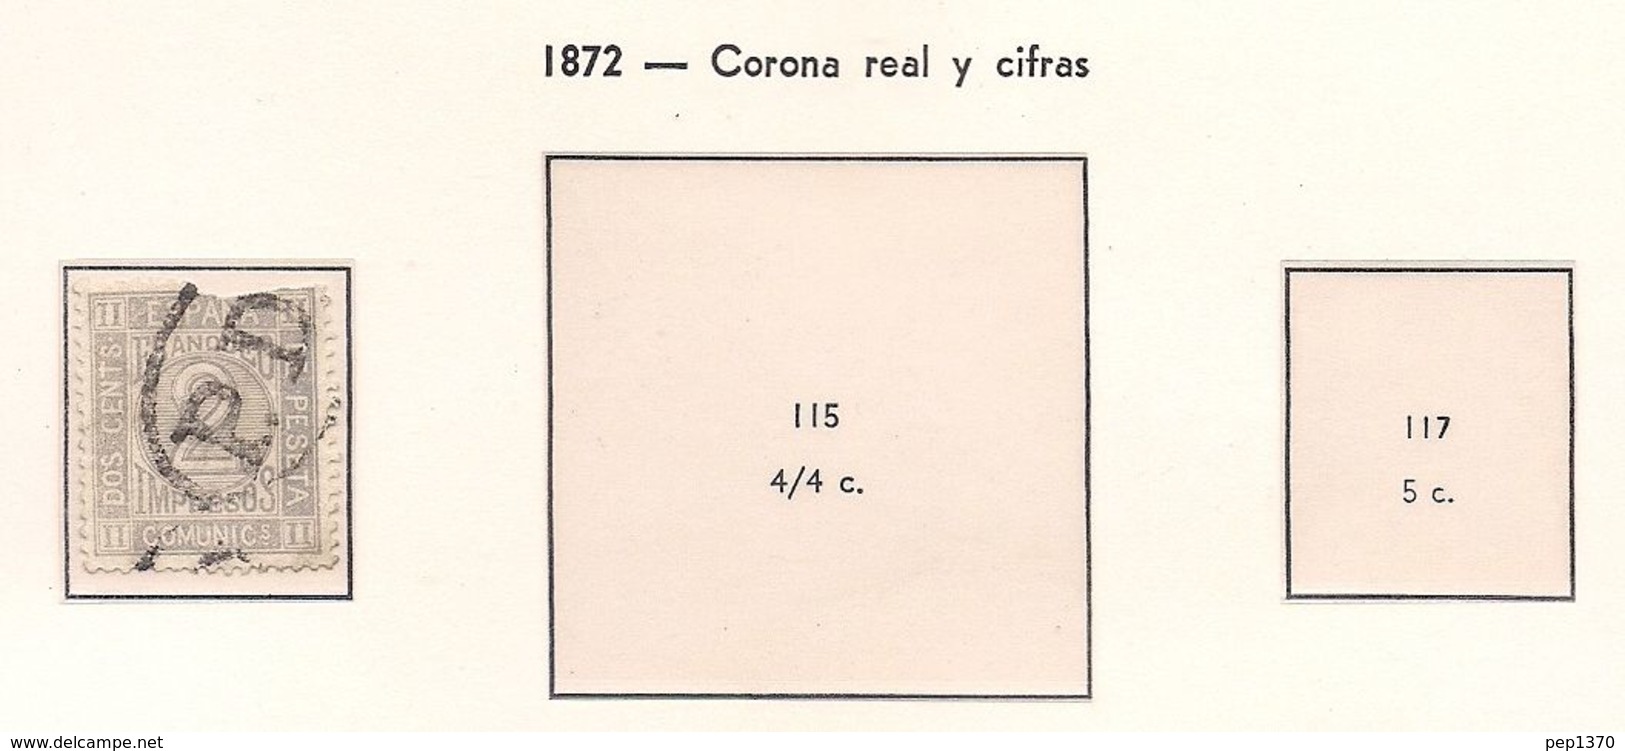 ESPAÑA 1872 - CORONA REAL Y CIFRAS - EDIFIL Nº 116 - USADO Y ROTO - Gebruikt